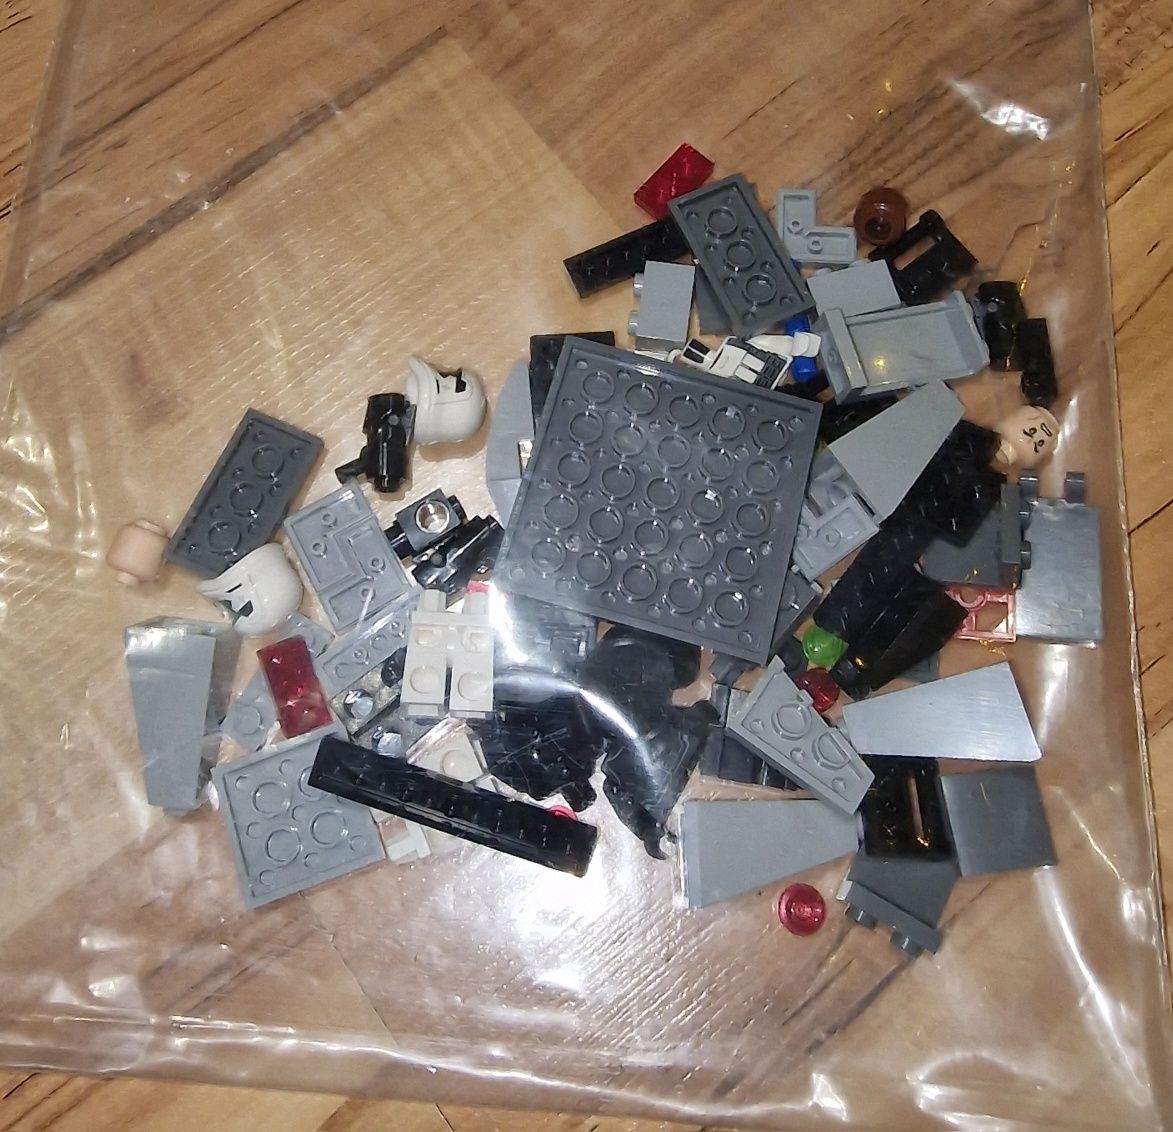 LEGO Star Wars 75132 Najwyższy Porządek